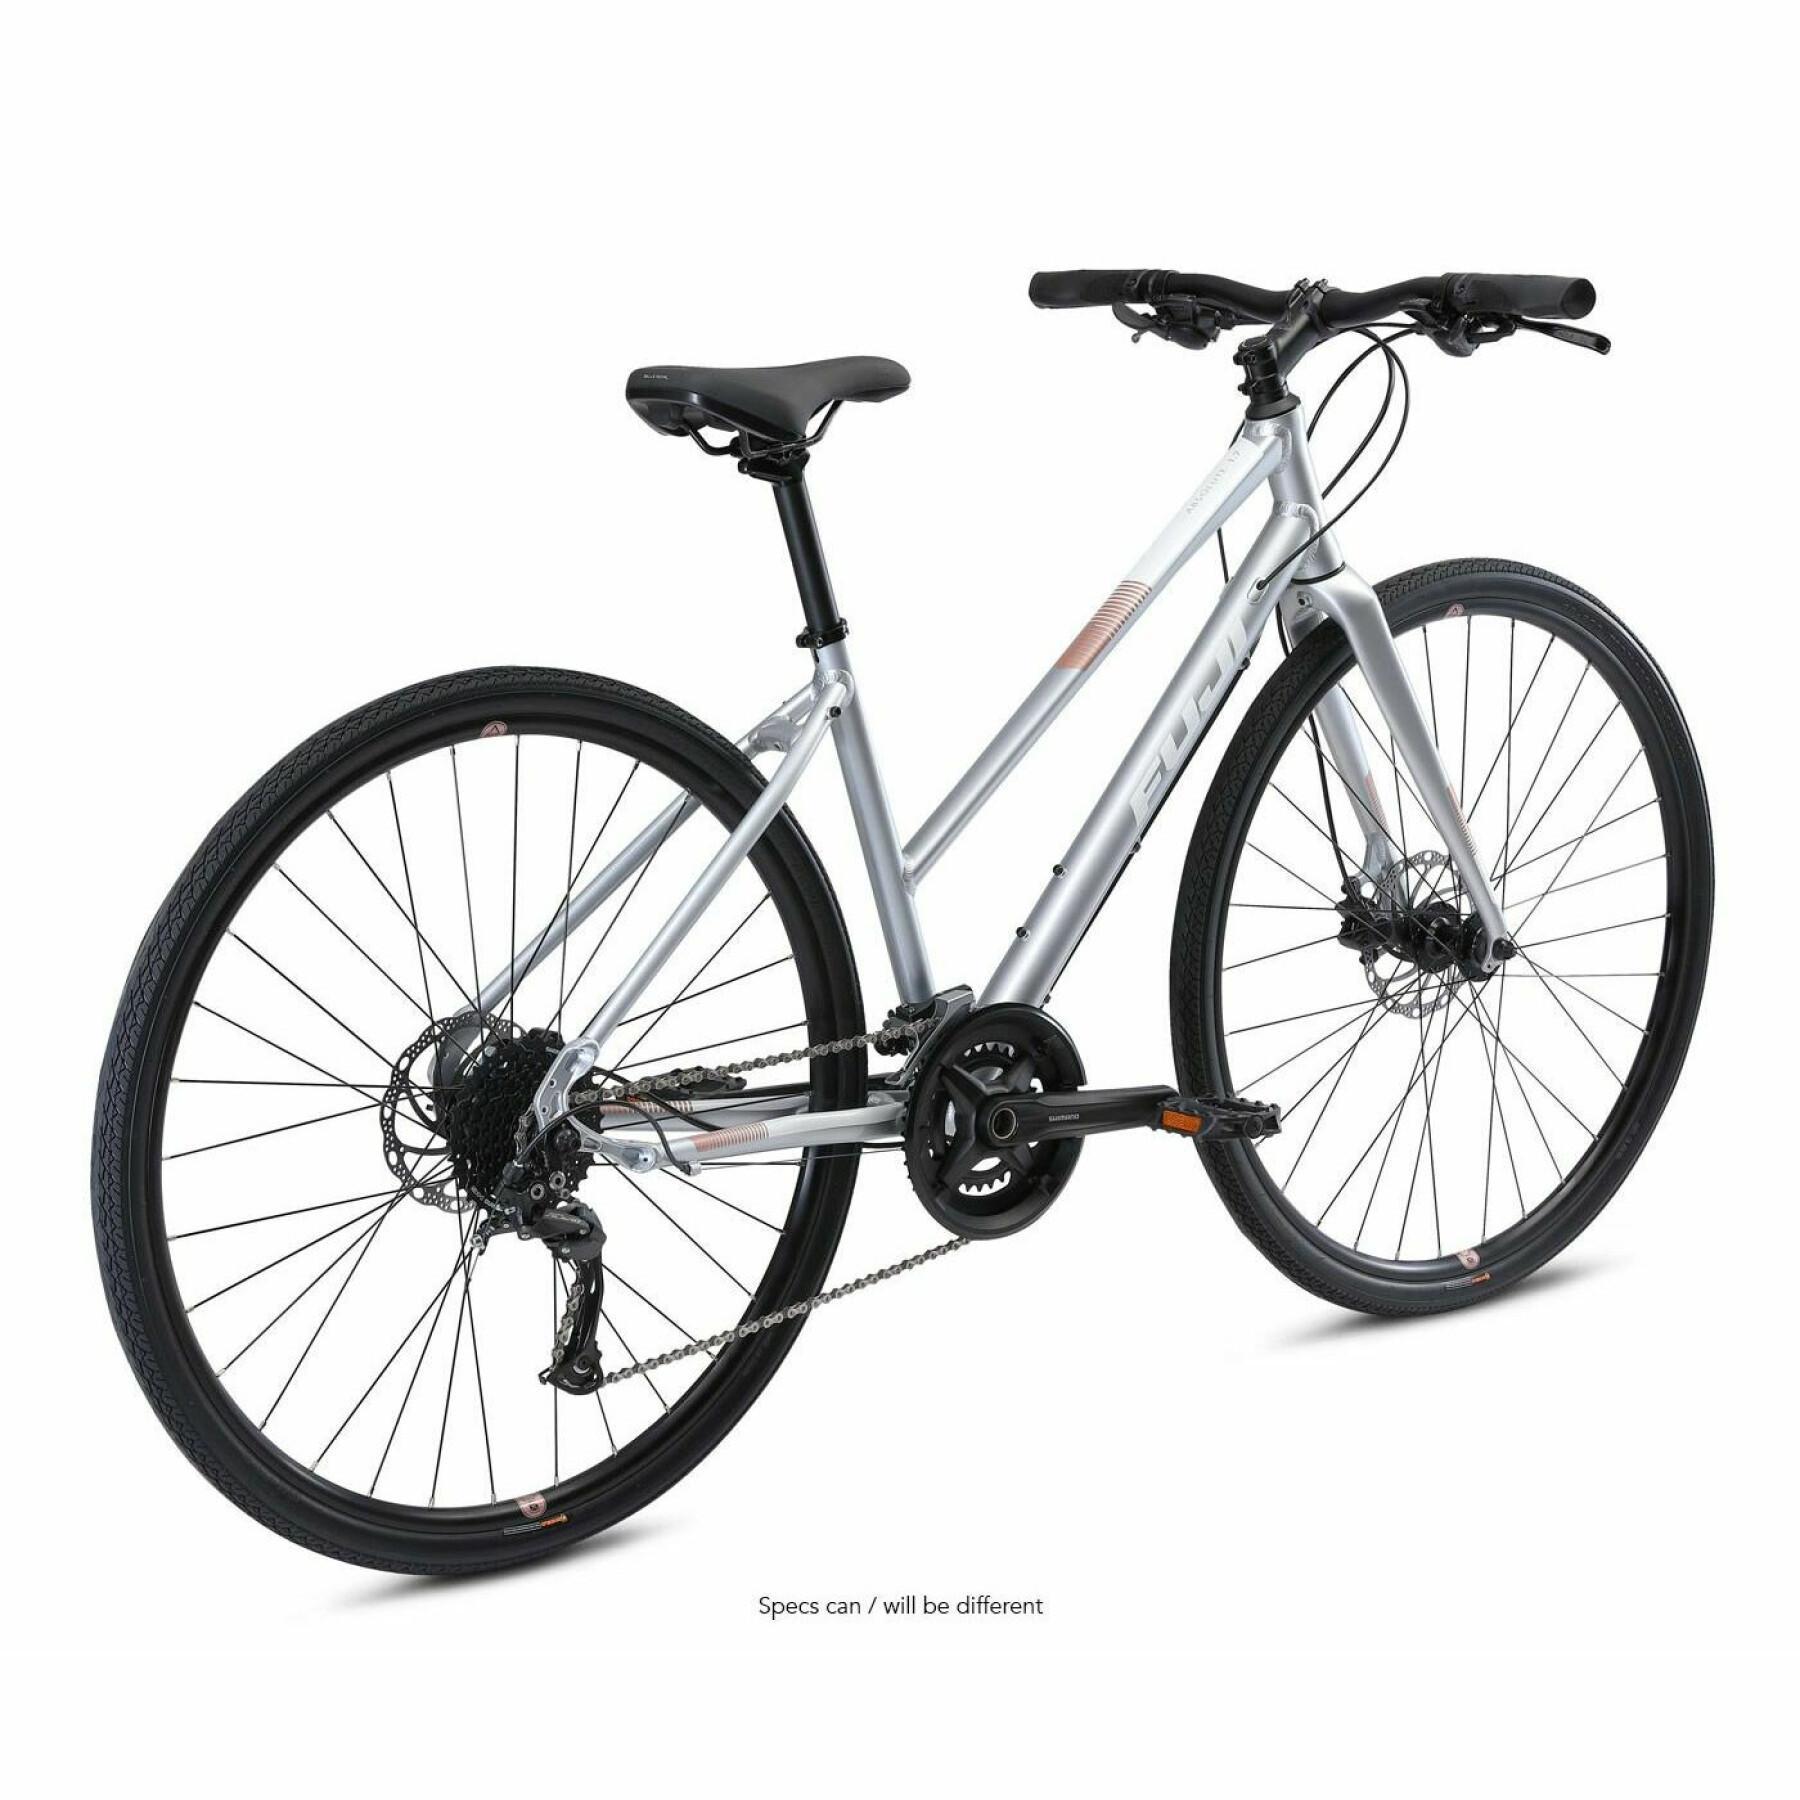 Bicicletta Fuji Absolute 1.7 st 2022